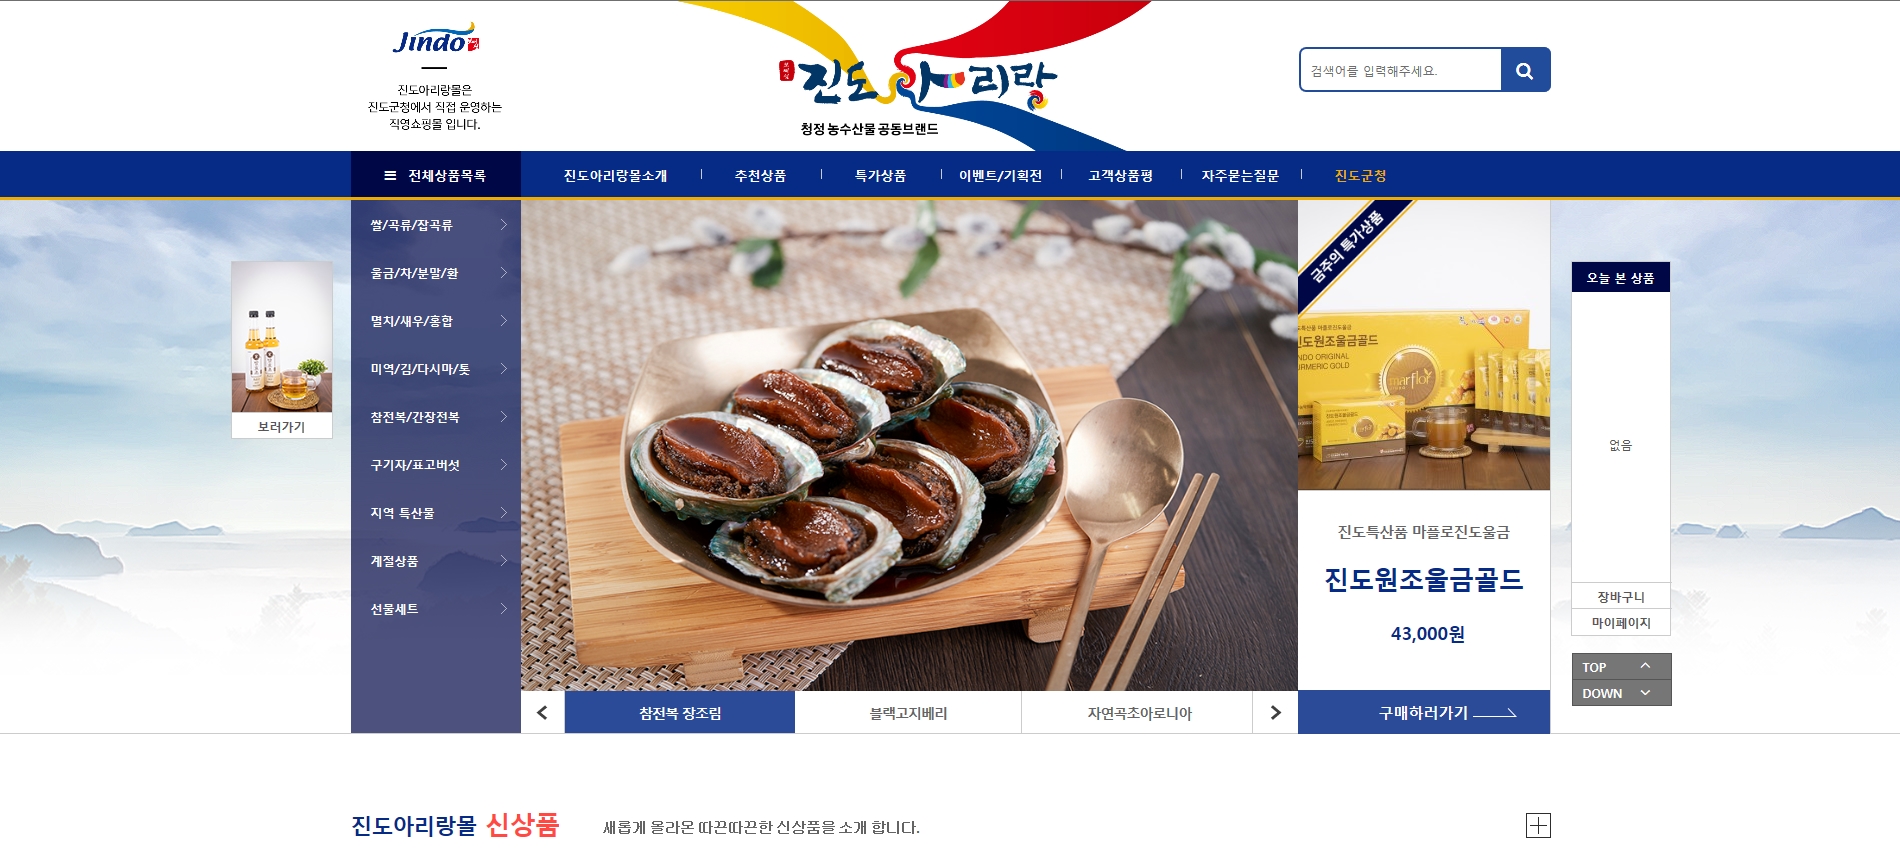 진도군 온라인쇼핑몰 ‘진도아리랑몰’ 새 단장 기념 이벤트 개최 이미지